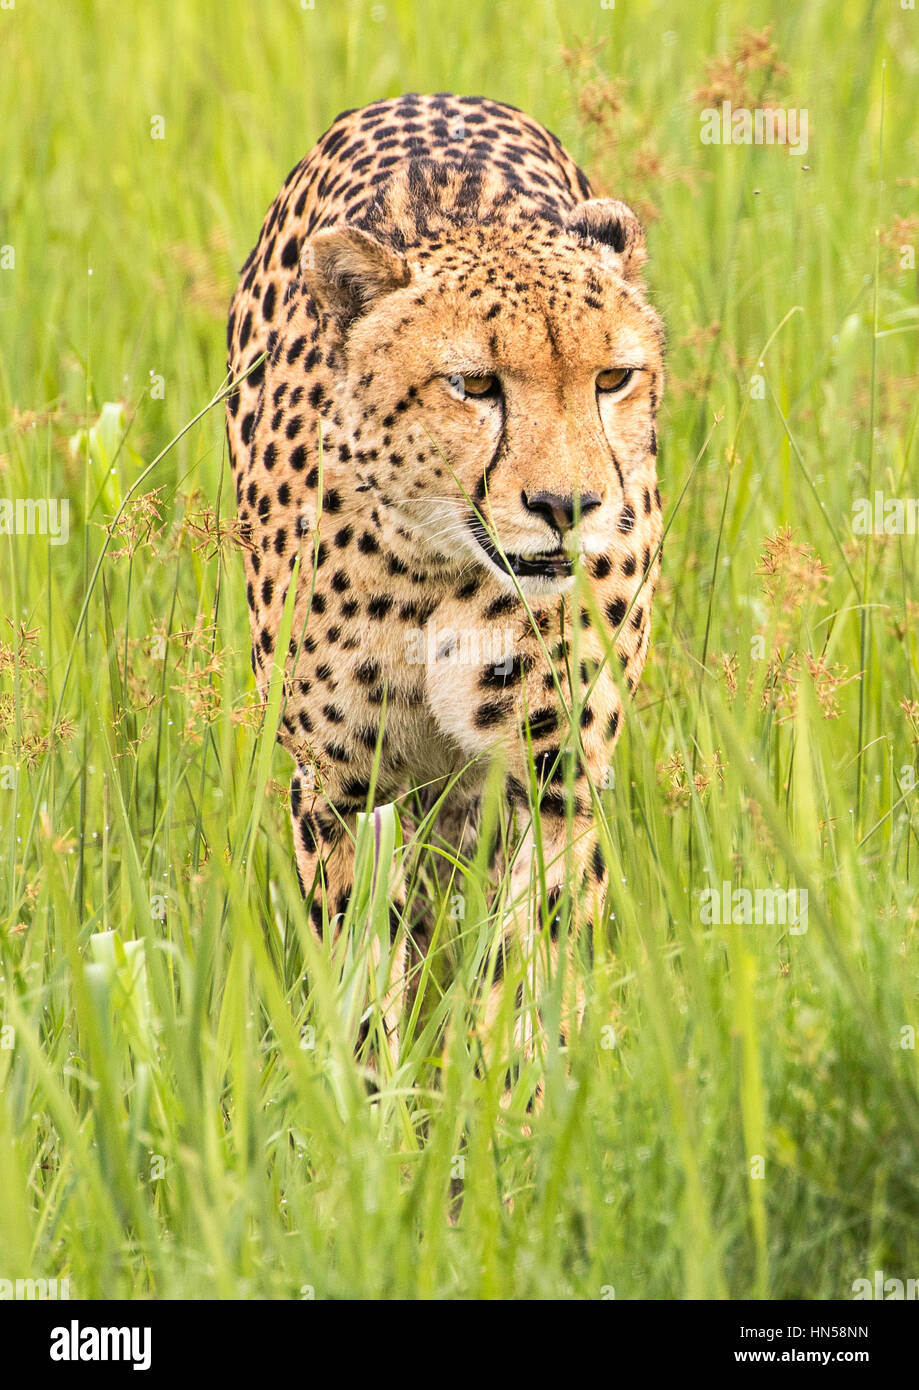 Cheetah stalking preda in erba bagnata Foto Stock